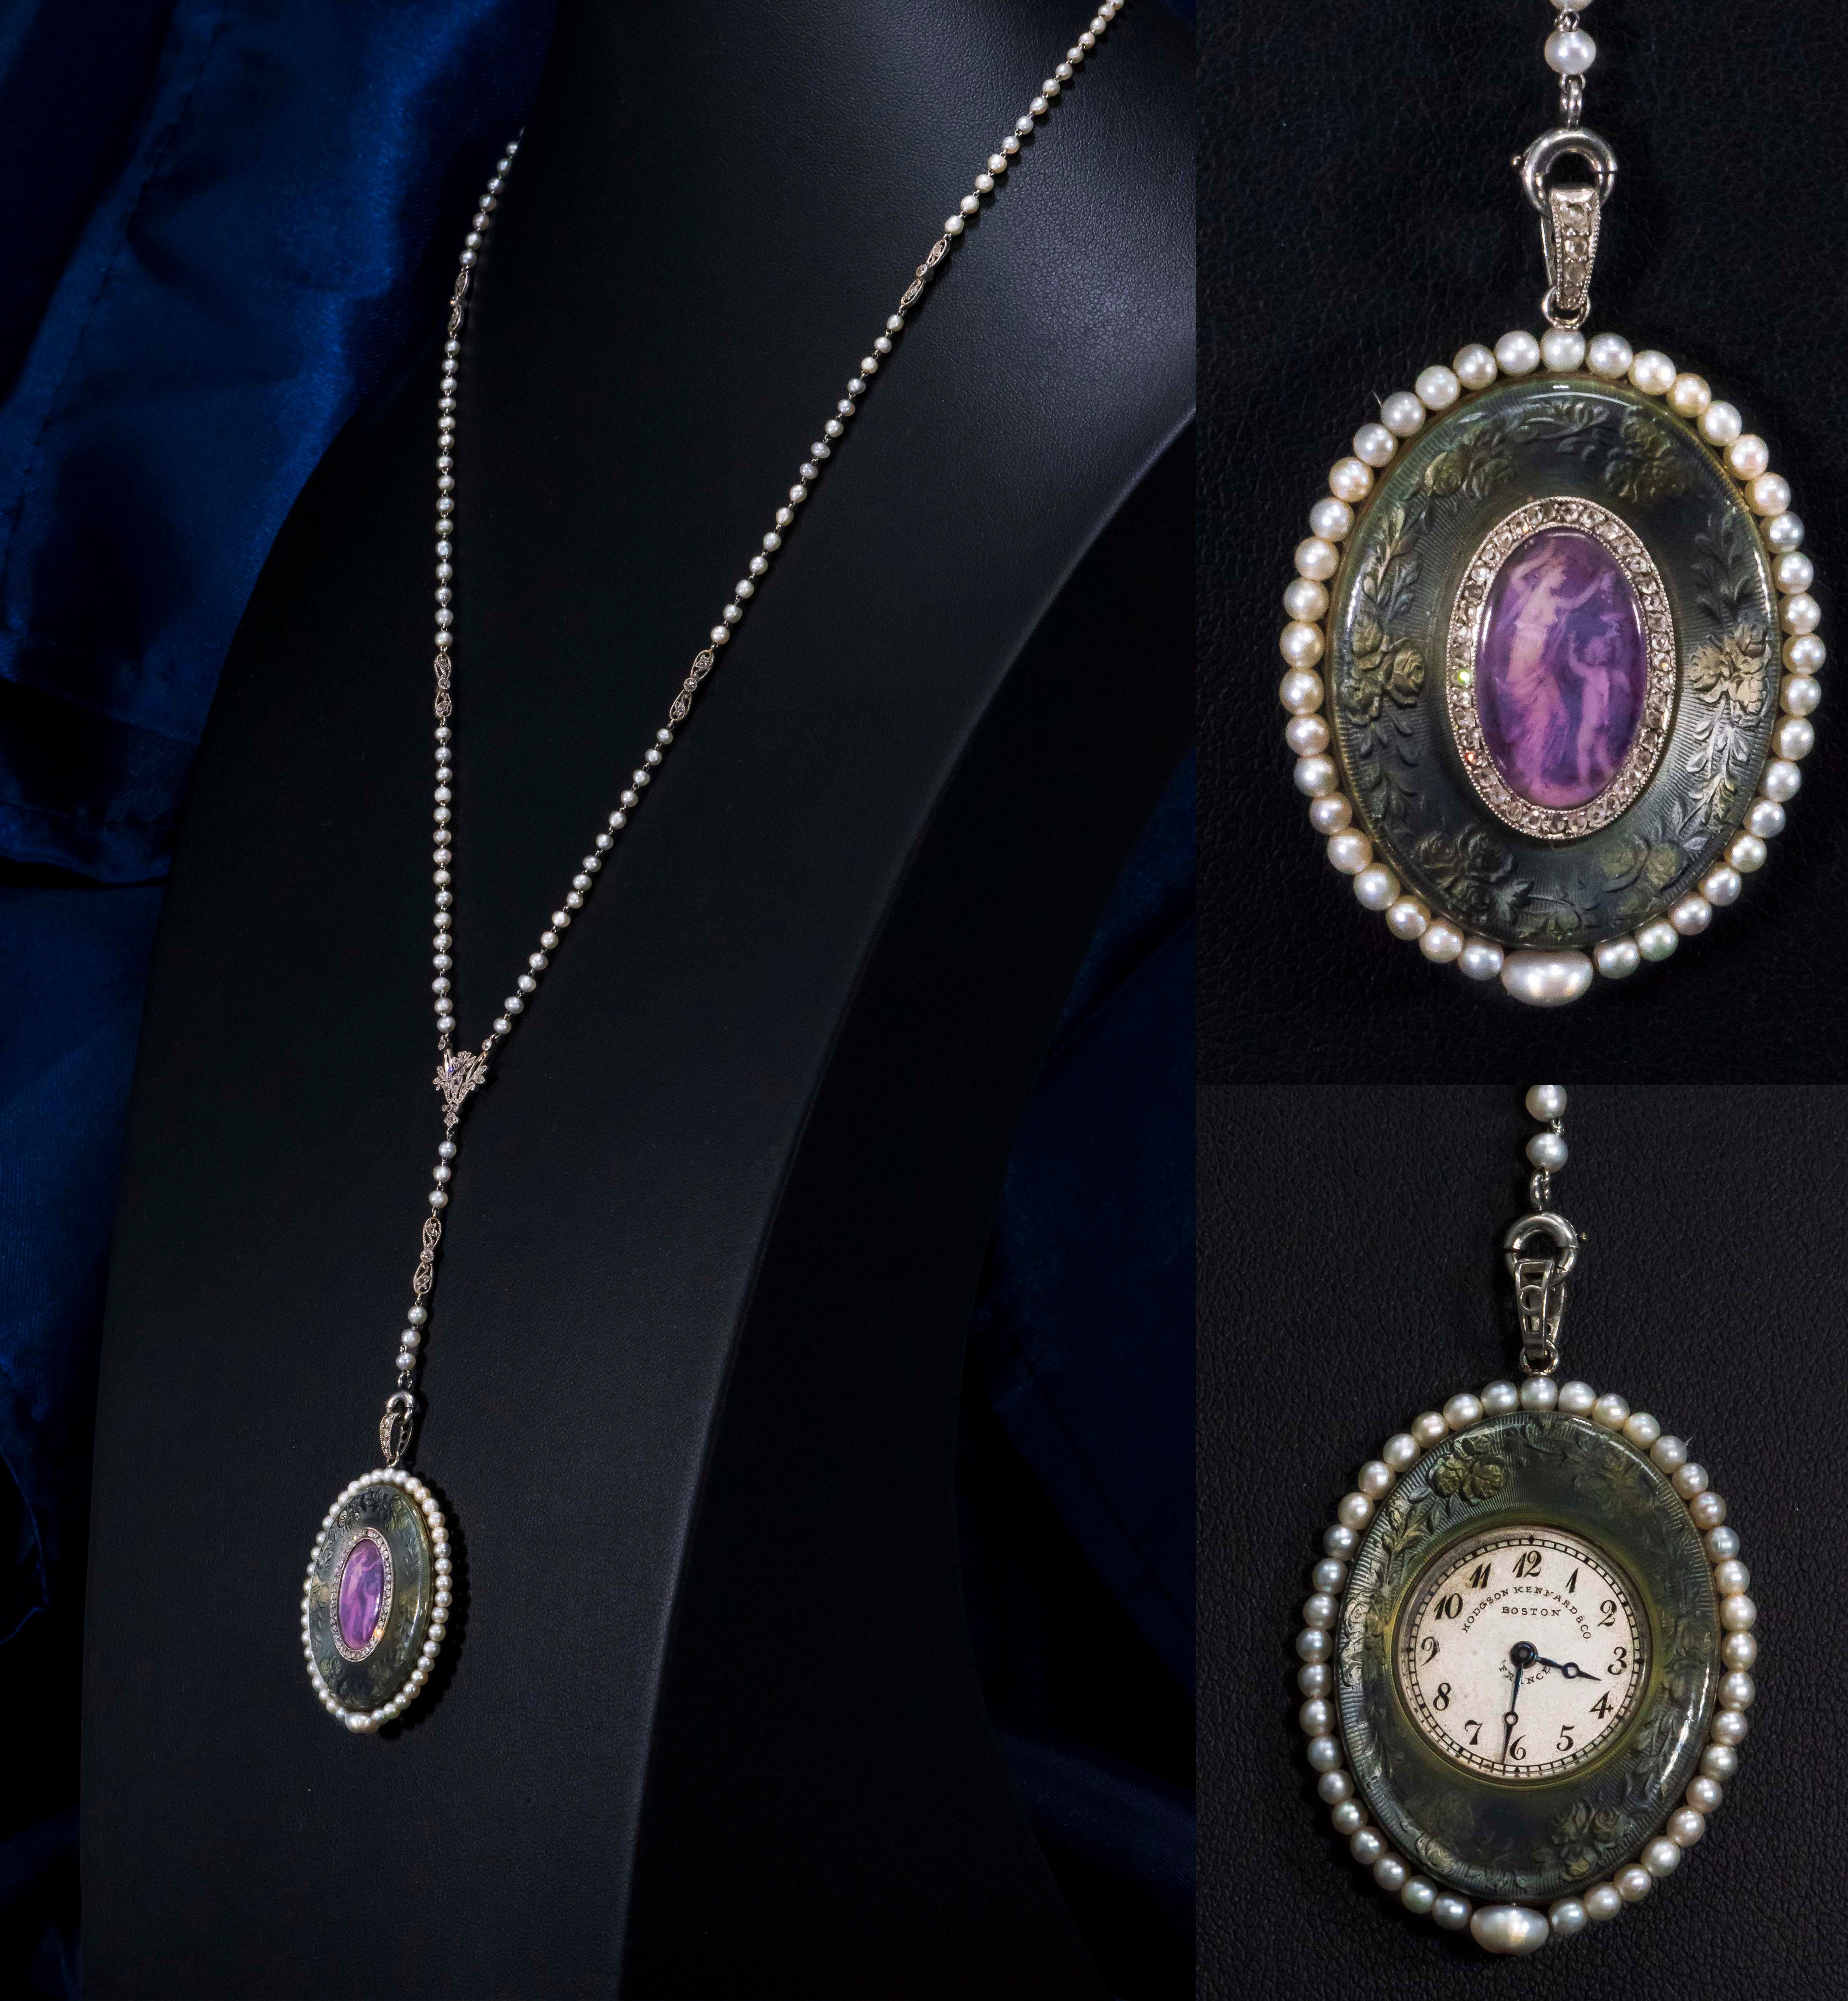 Belle Époque Verger Freres Paillet Platinum Diamond Enamel Pearl Necklace Pendant Watch, 1900 For Sale